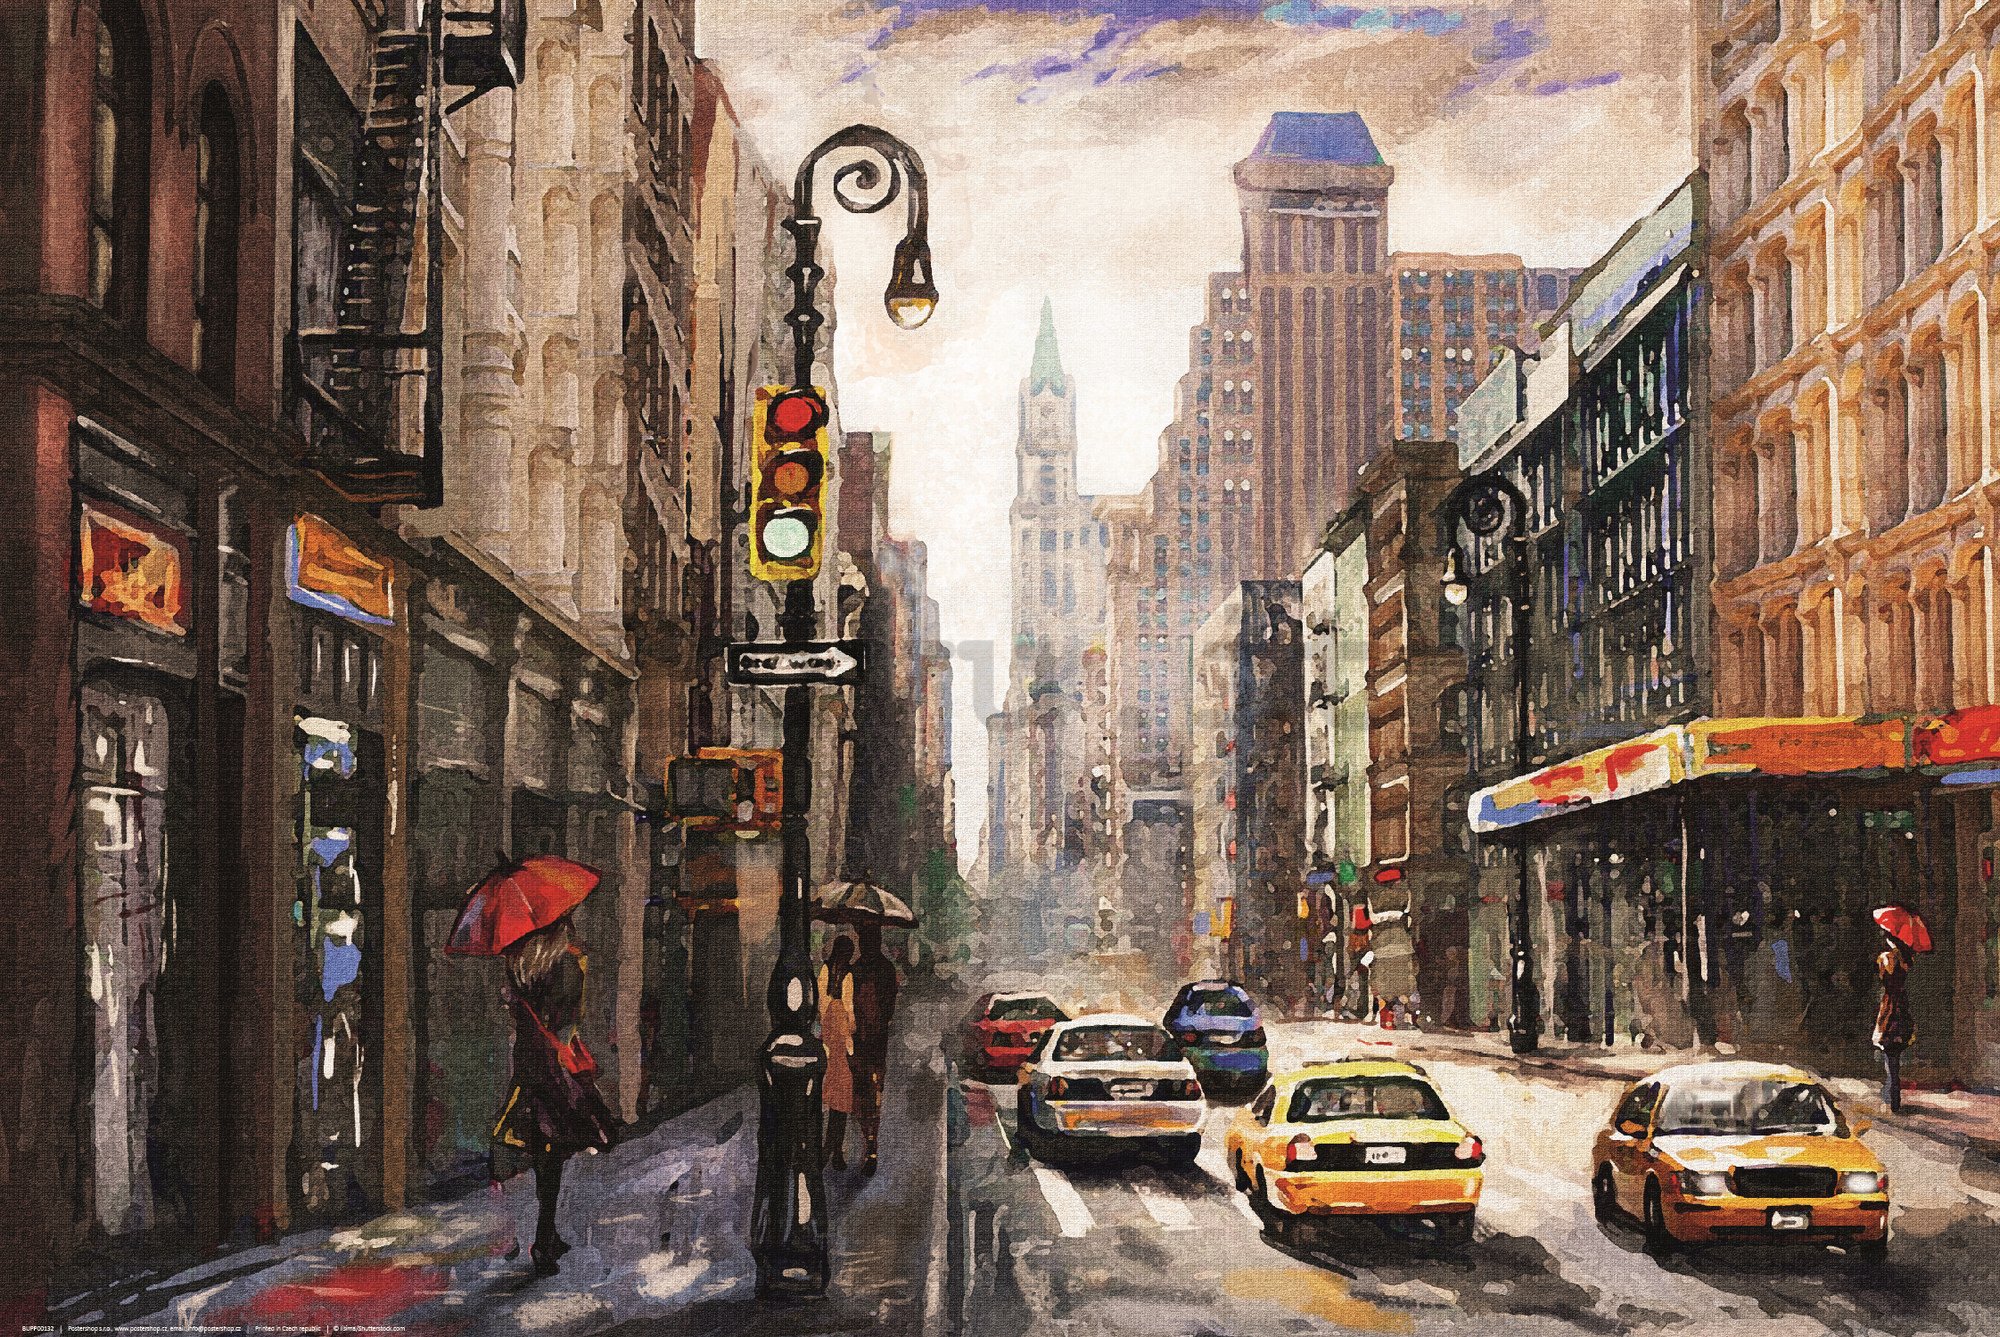 Poster: Il vicolo di New York (pittura a olio)